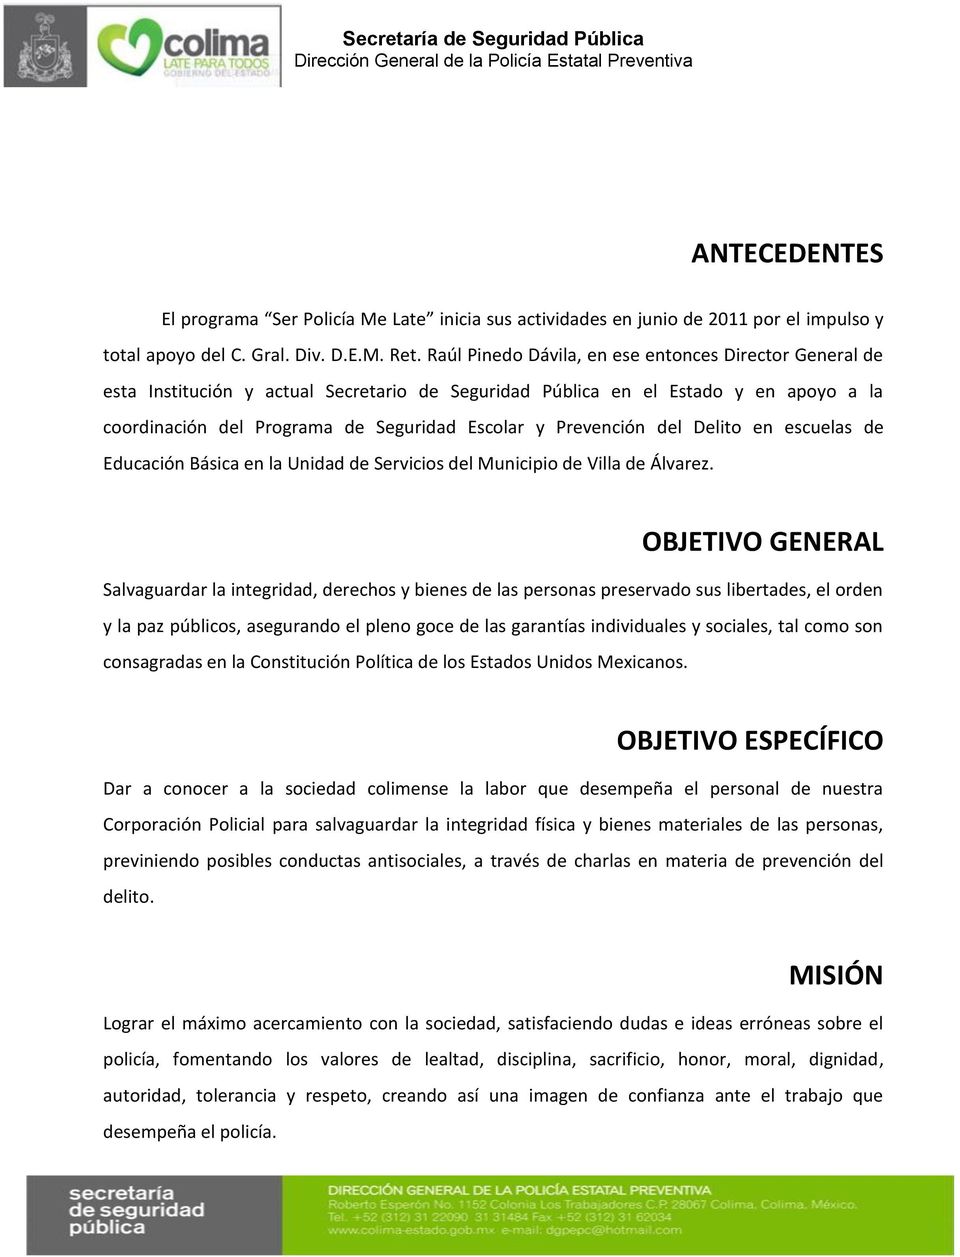 Prevención del Delito en escuelas de Educación Básica en la Unidad de Servicios del Municipio de Villa de Álvarez.